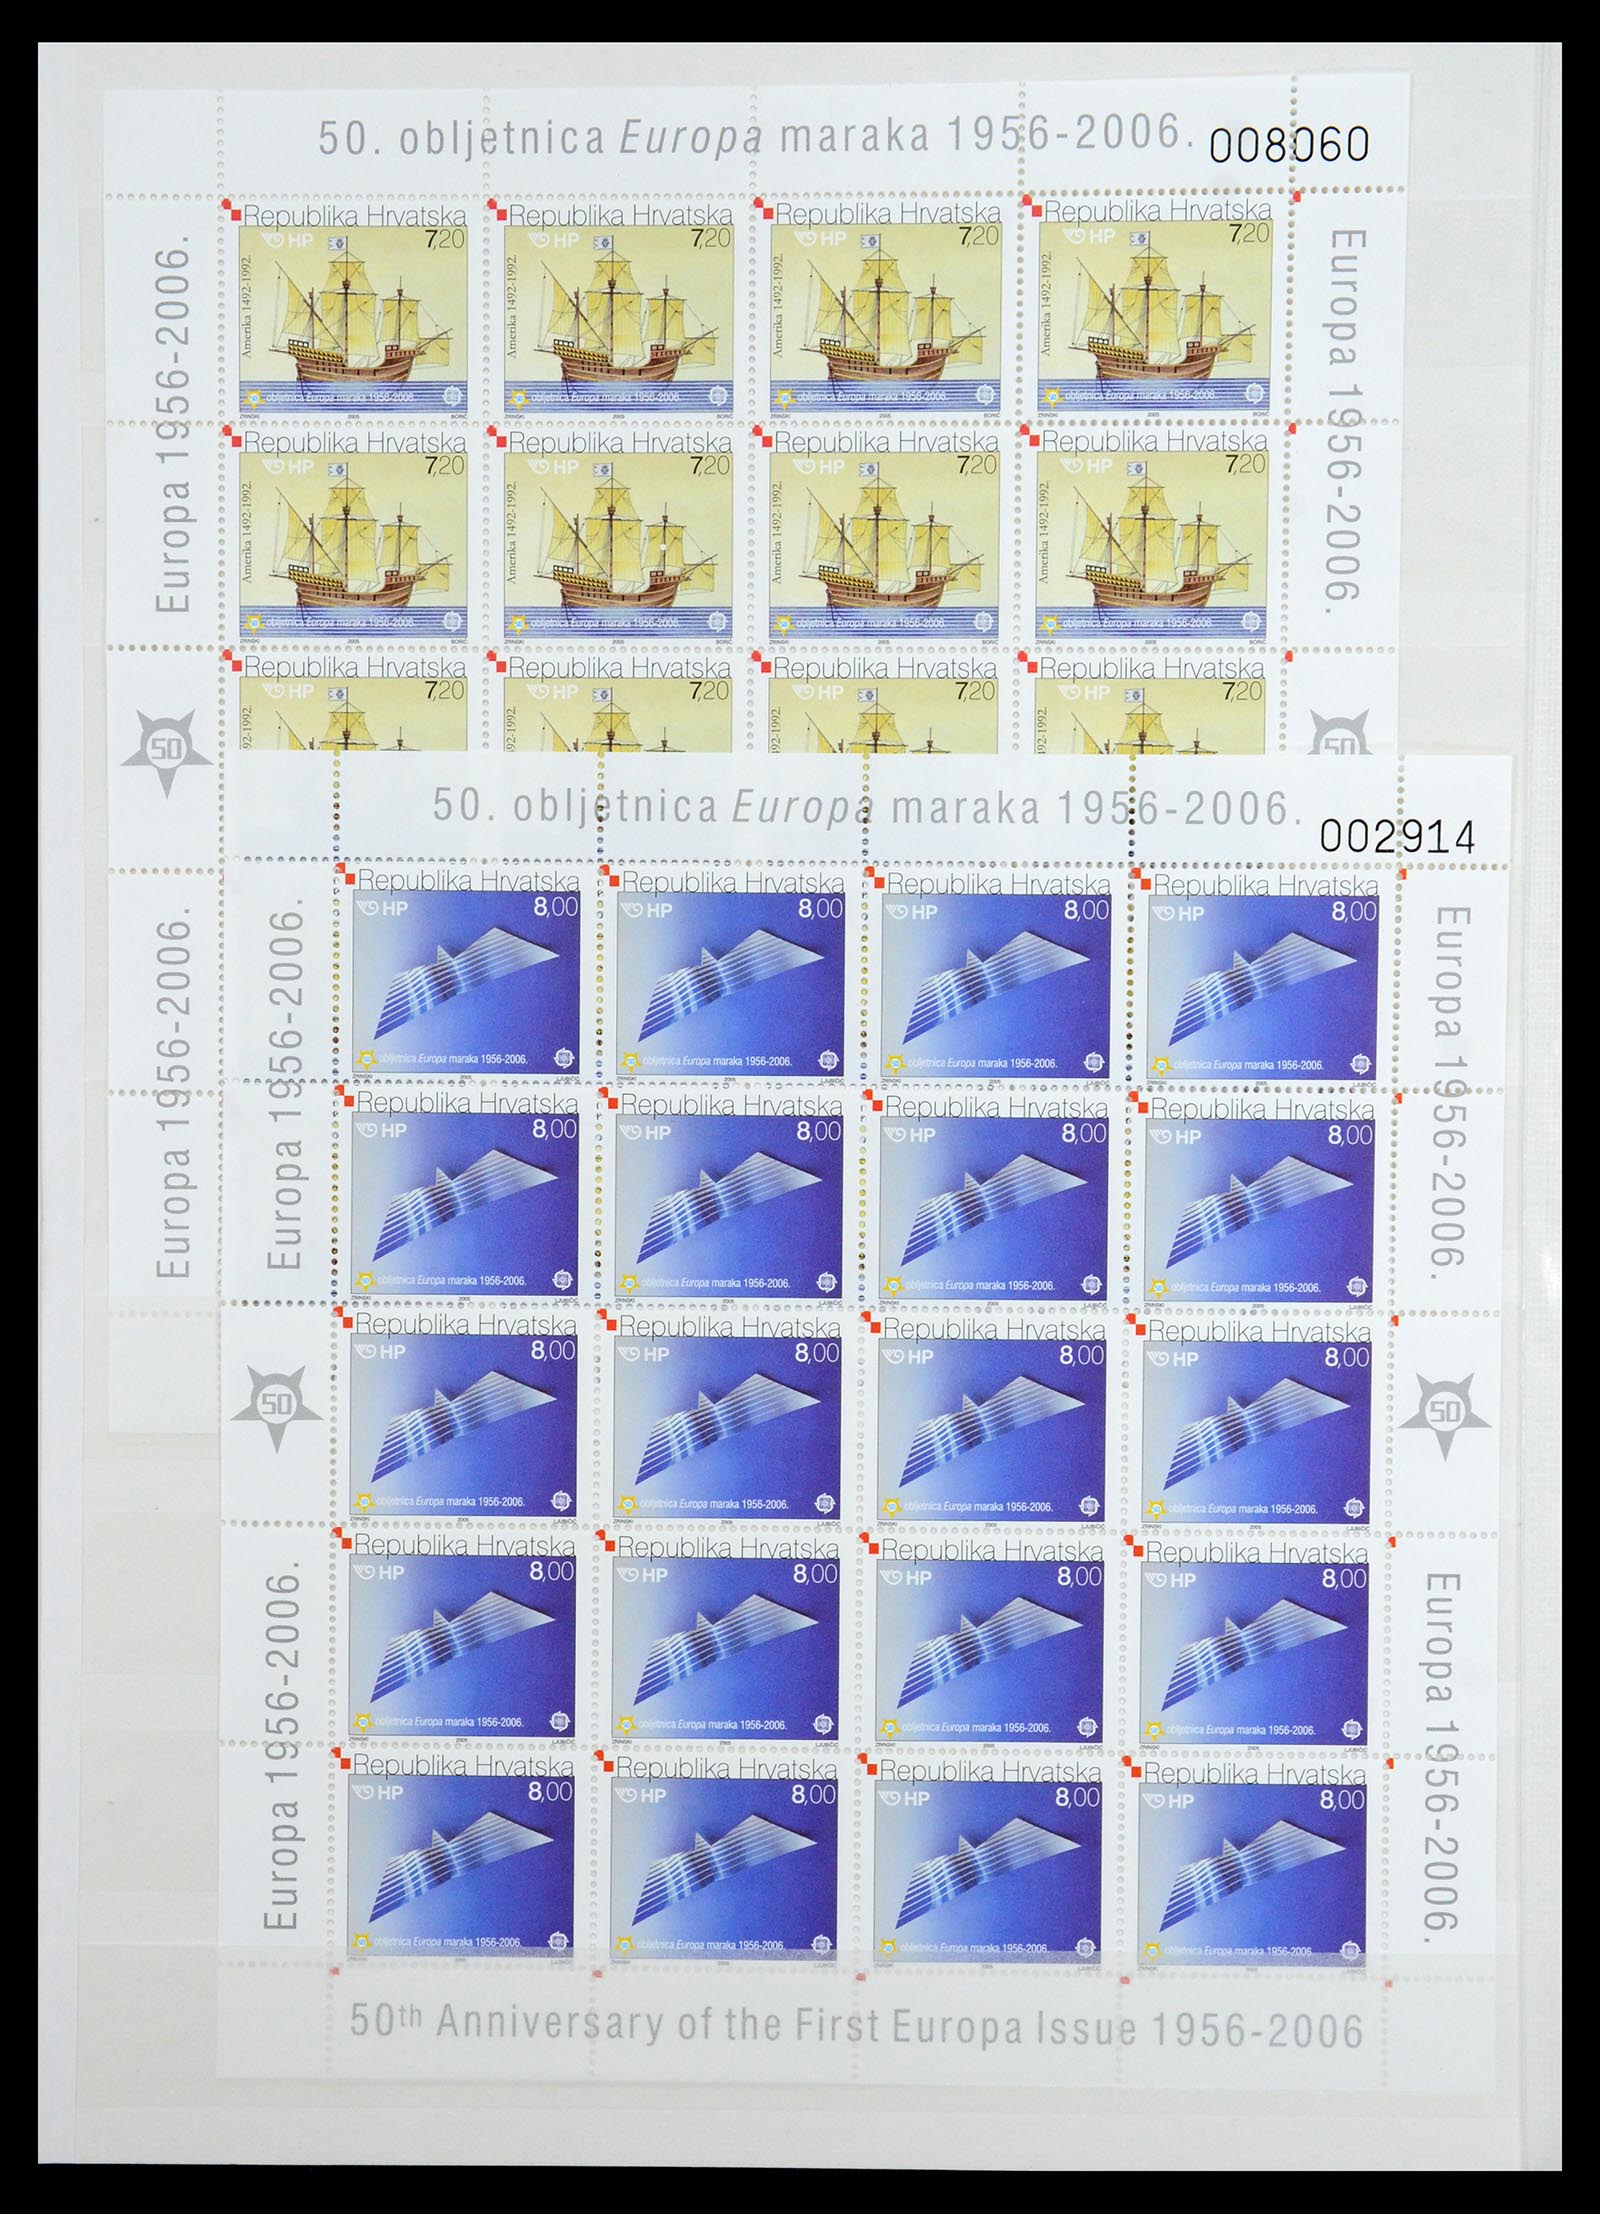 36461 048 - Stamp collection 36461 Slovenia, Croatia and Bosnia-Herzegovina MNH 1991